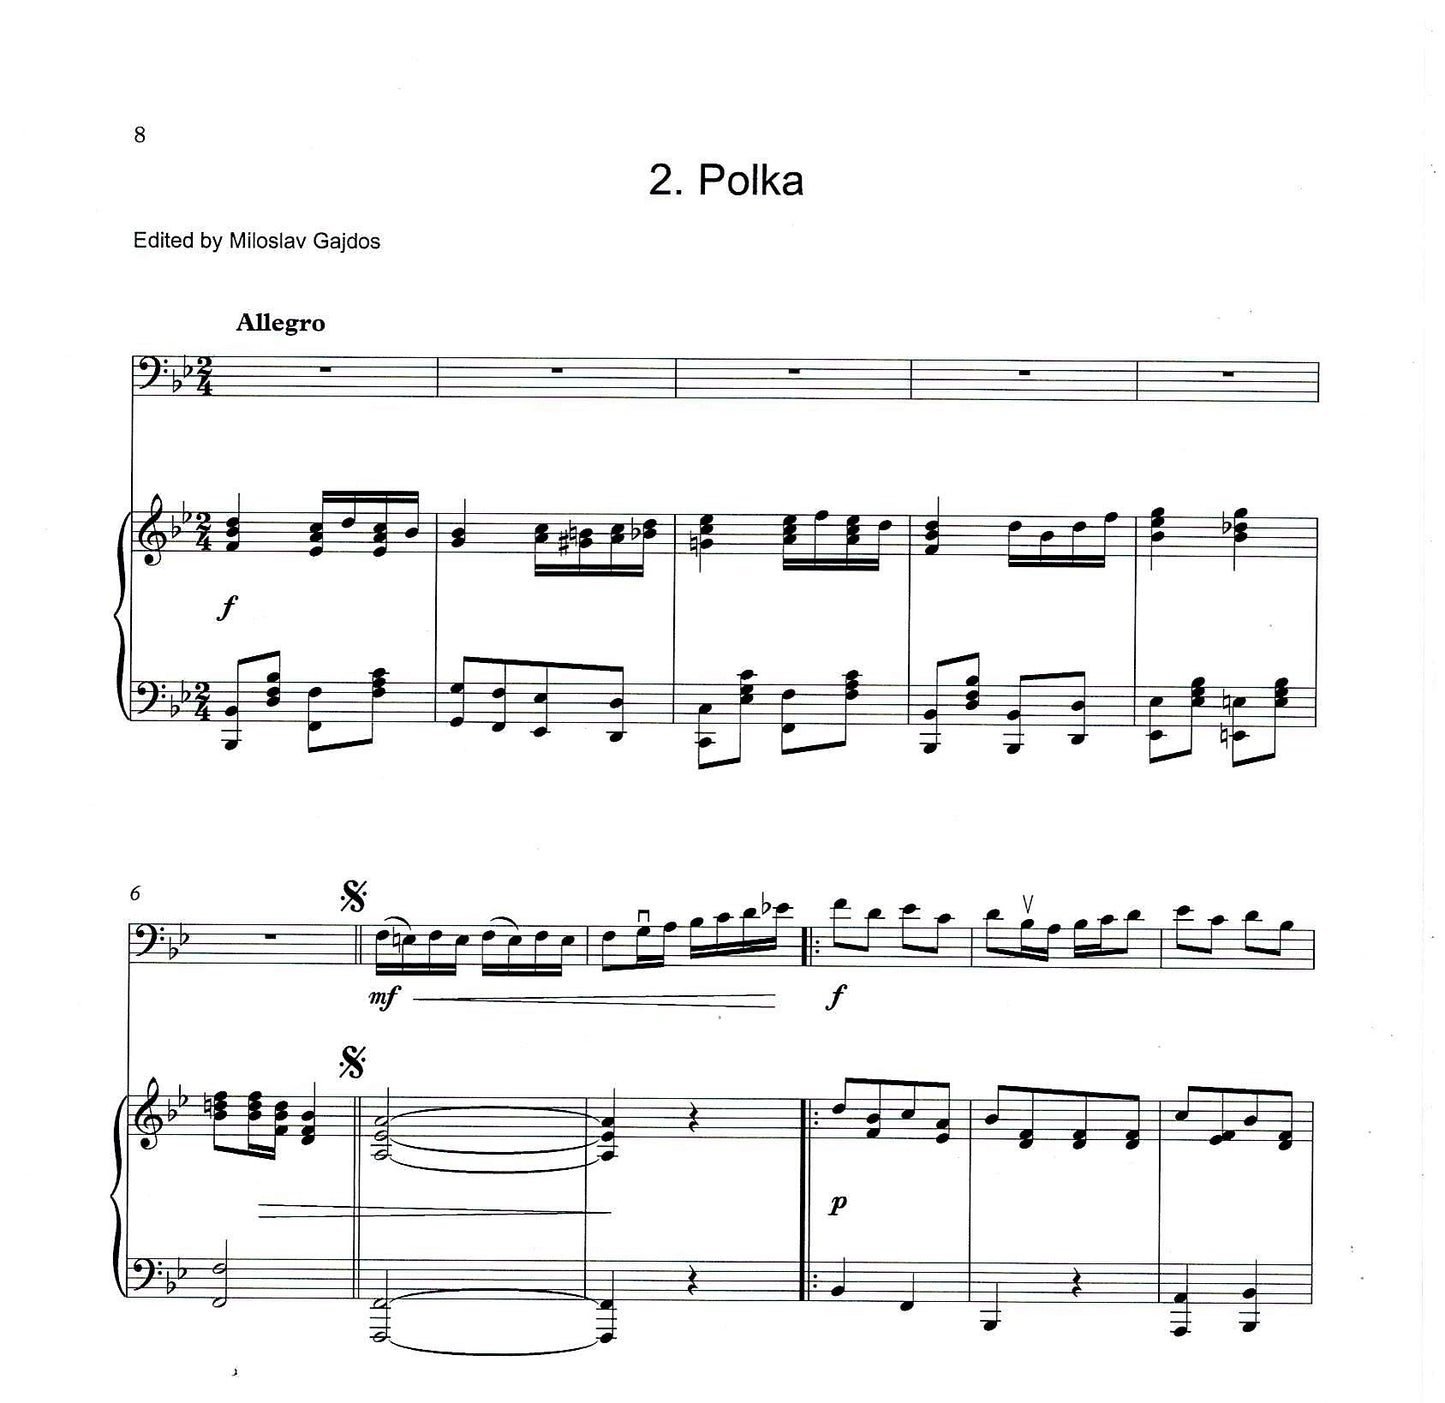 František Gregora: Scherzo in B flat major & Polka for double bass & piano (ed. by Gajdoš)